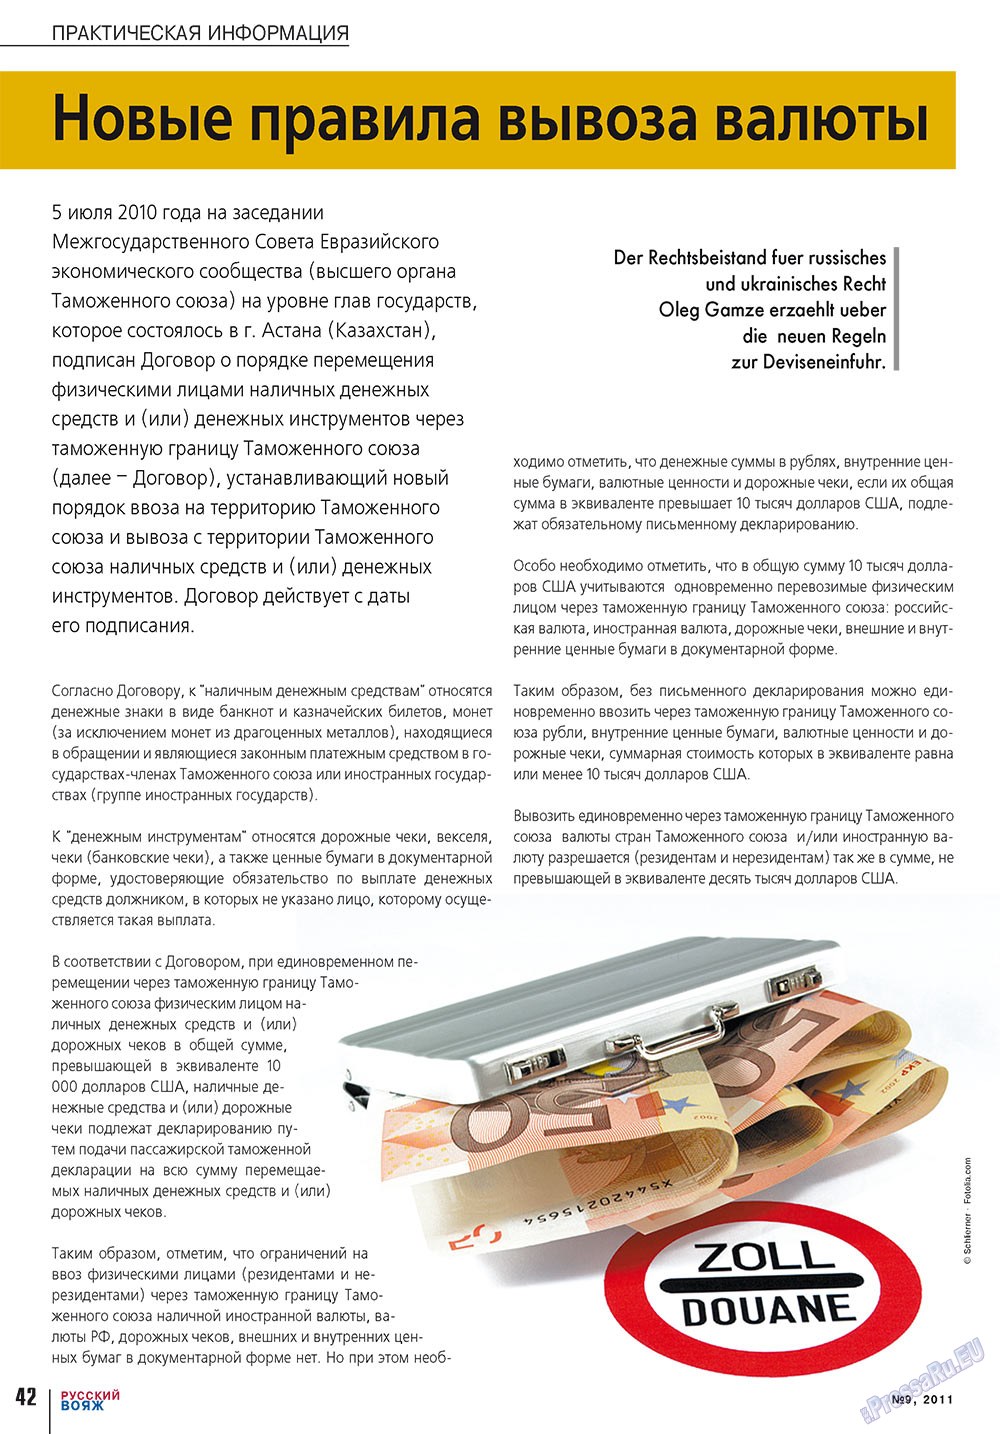 Русский вояж (журнал). 2011 год, номер 9, стр. 42